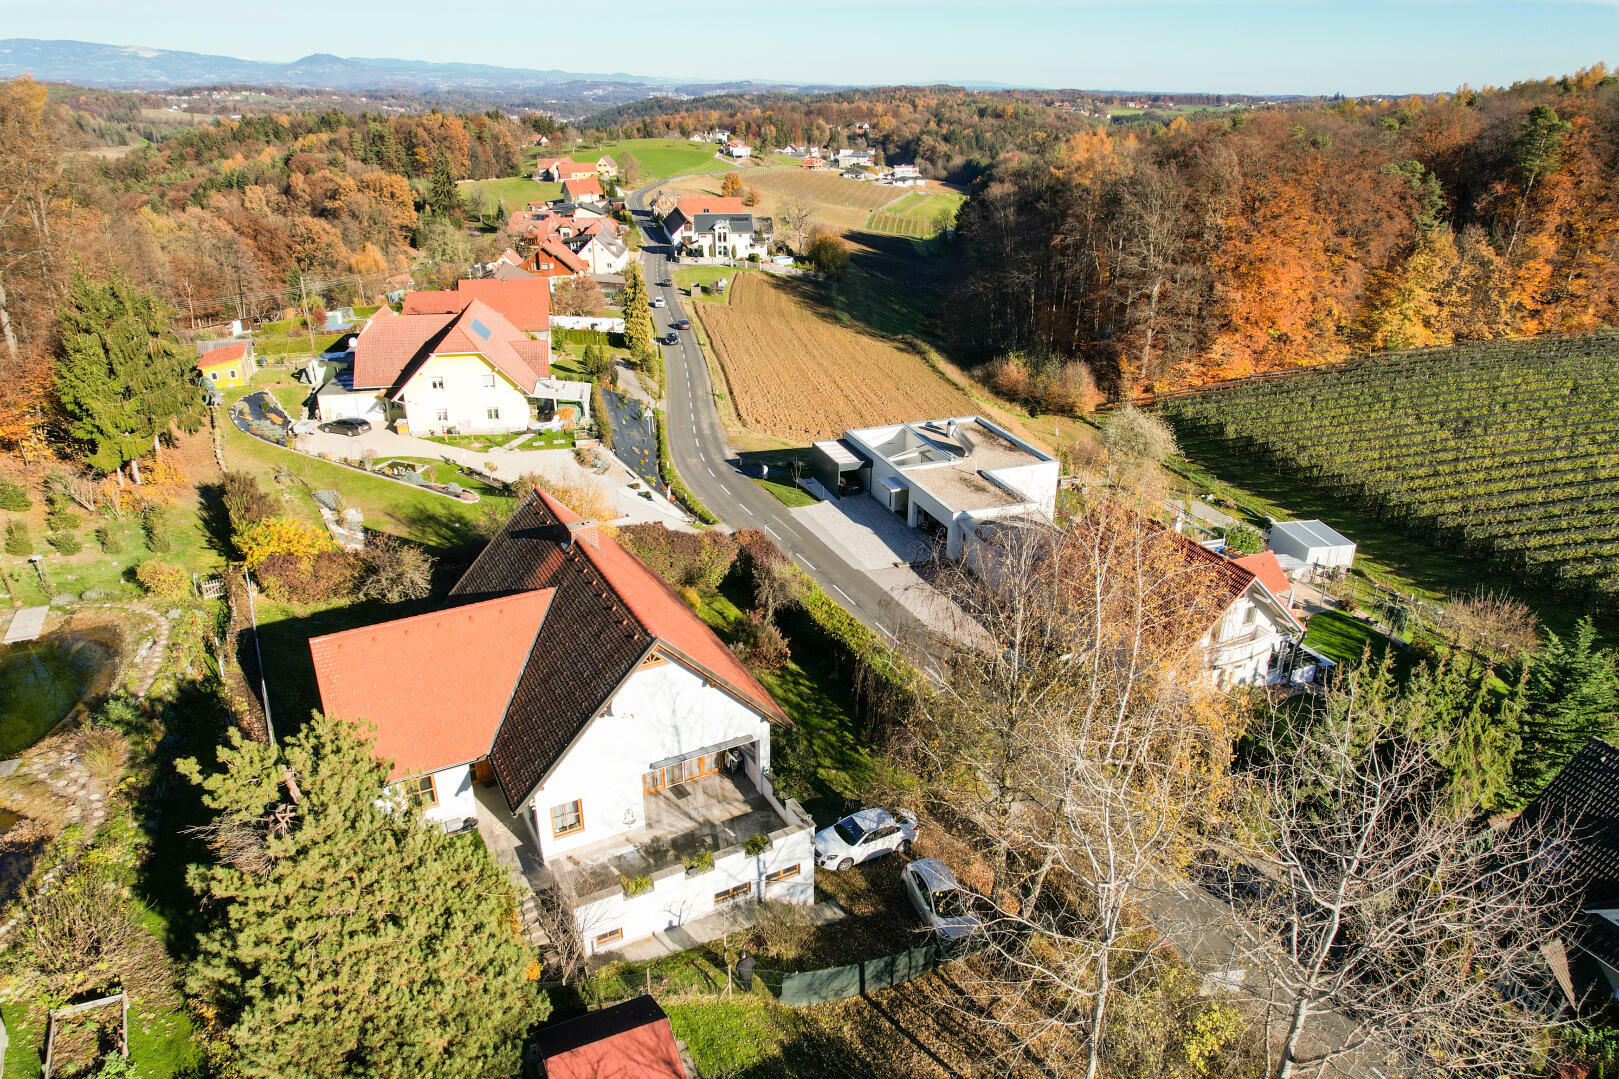 Haus zu kaufen: Kogelbuch 6, 8302 Nestelbach bei Graz - Einfamilienhaus Graz Umgebung  702-2